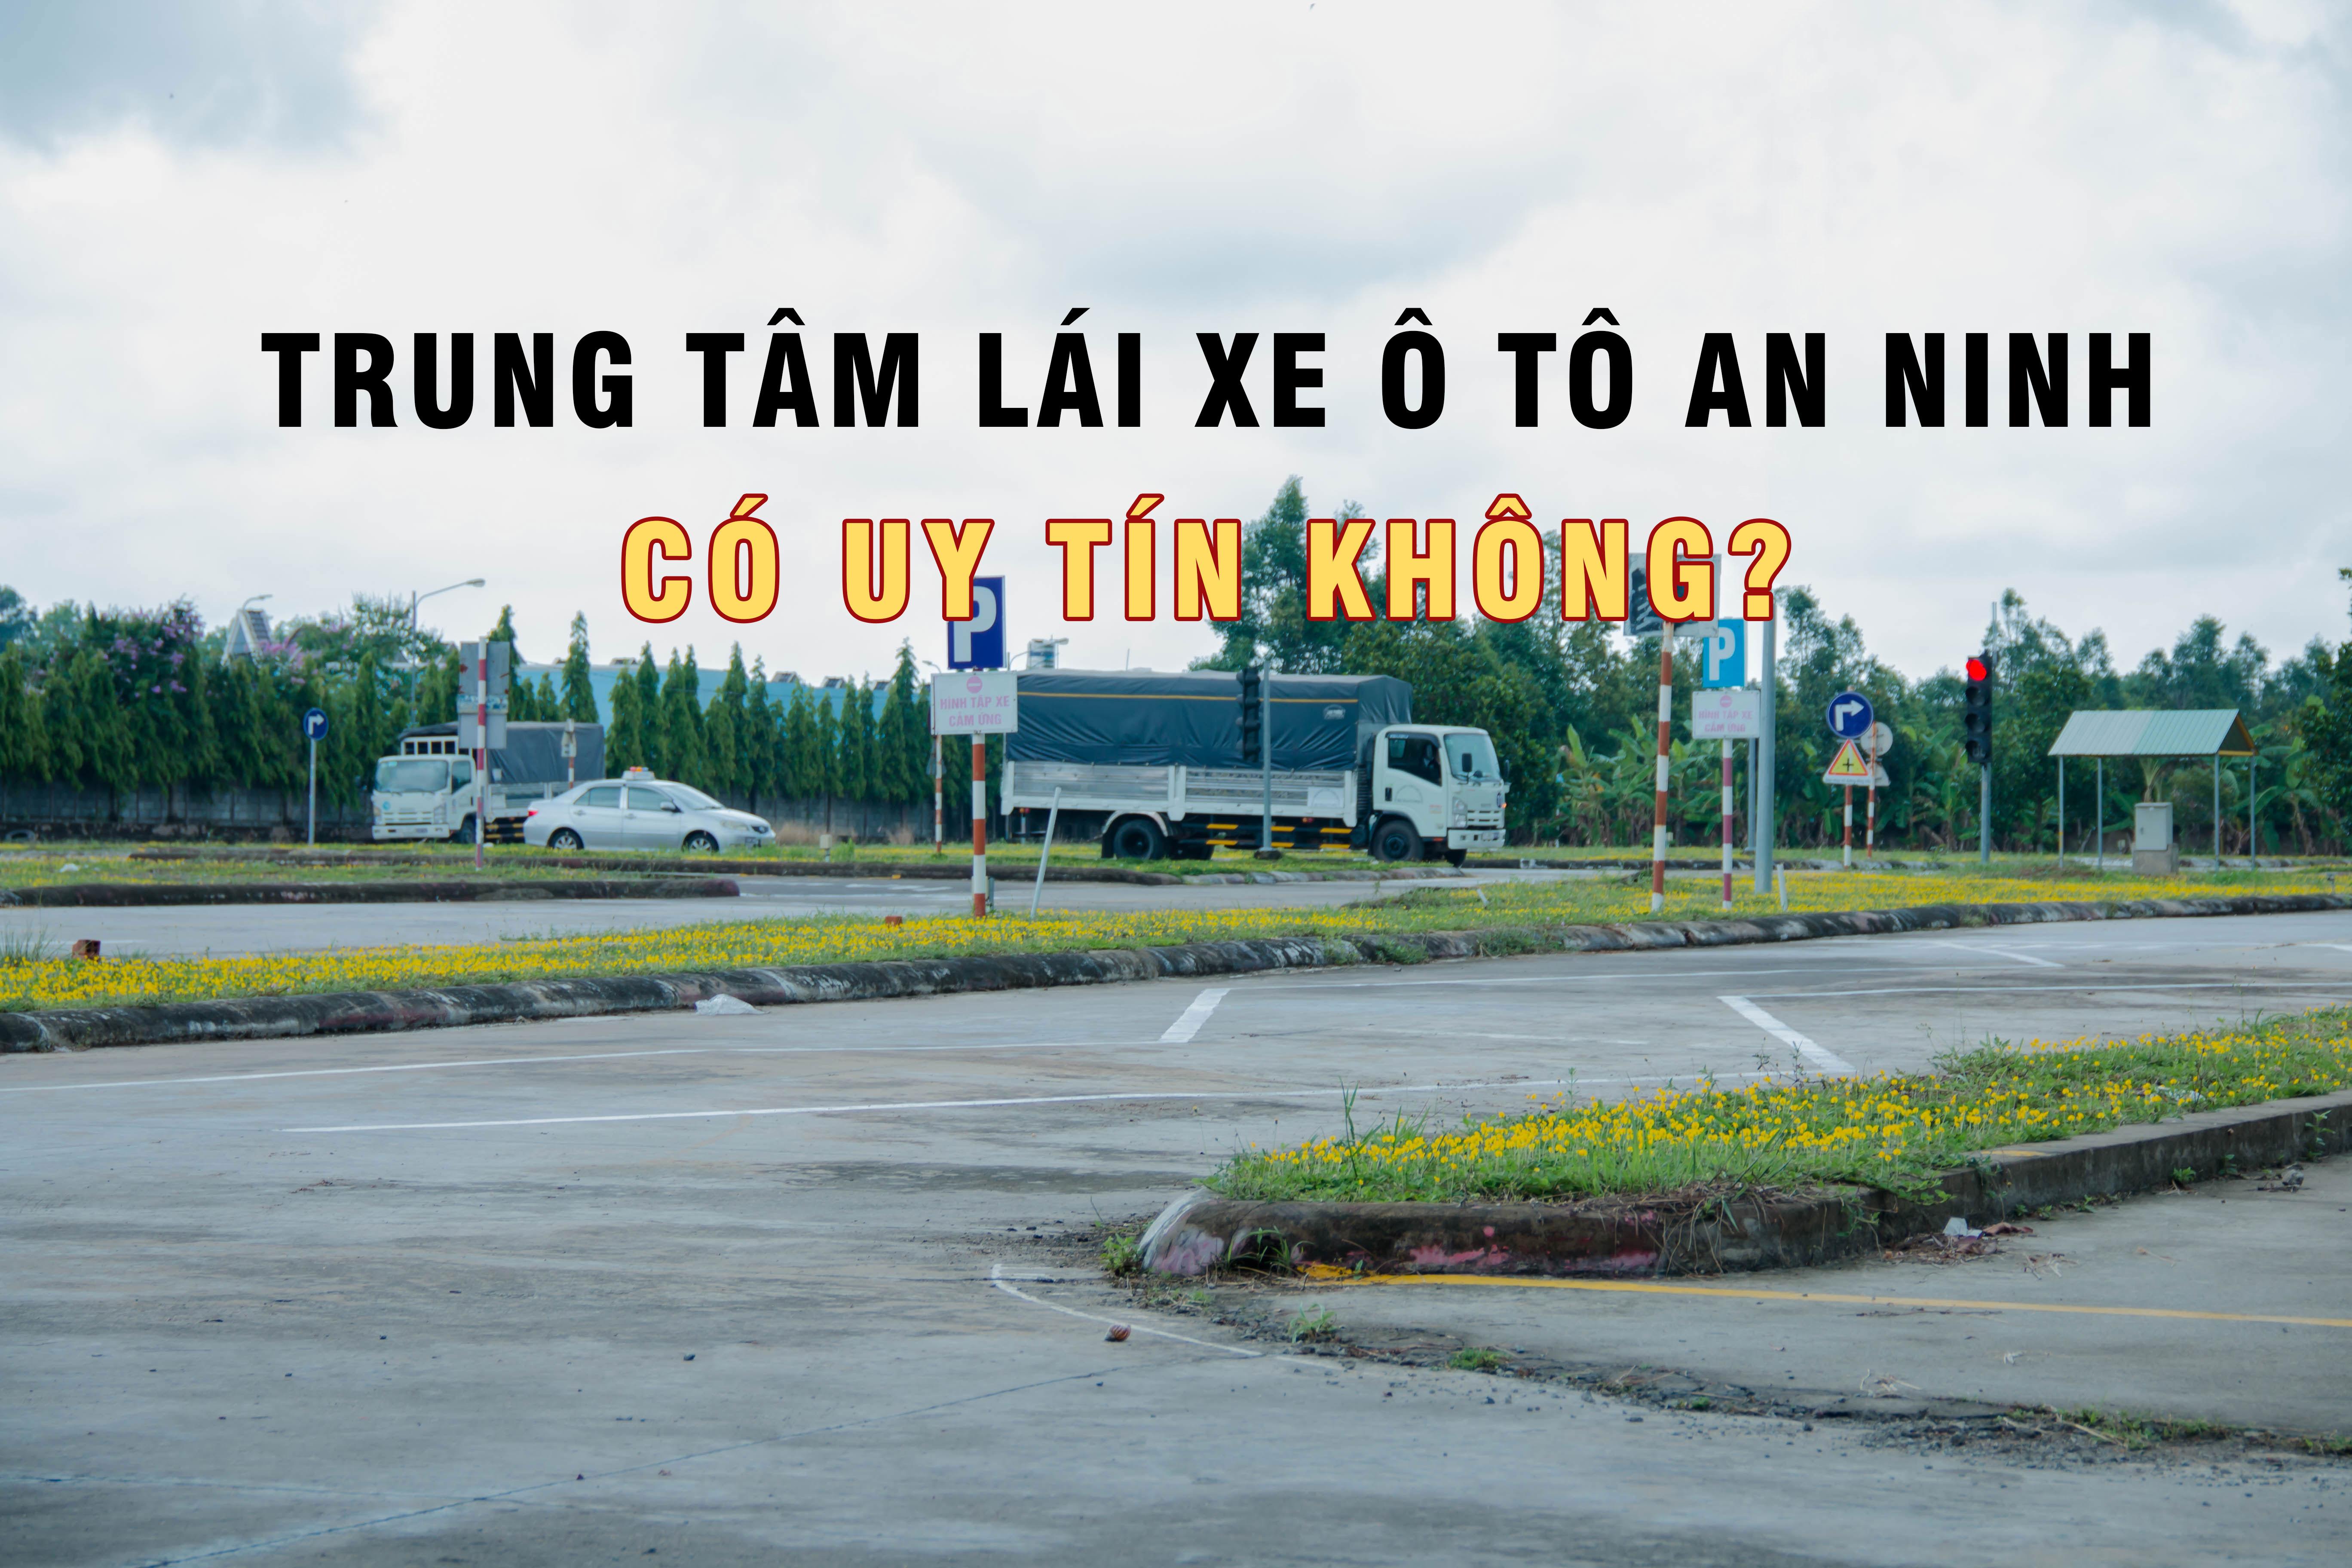 Trung tâm lái xe An Ninh có uy tín không?